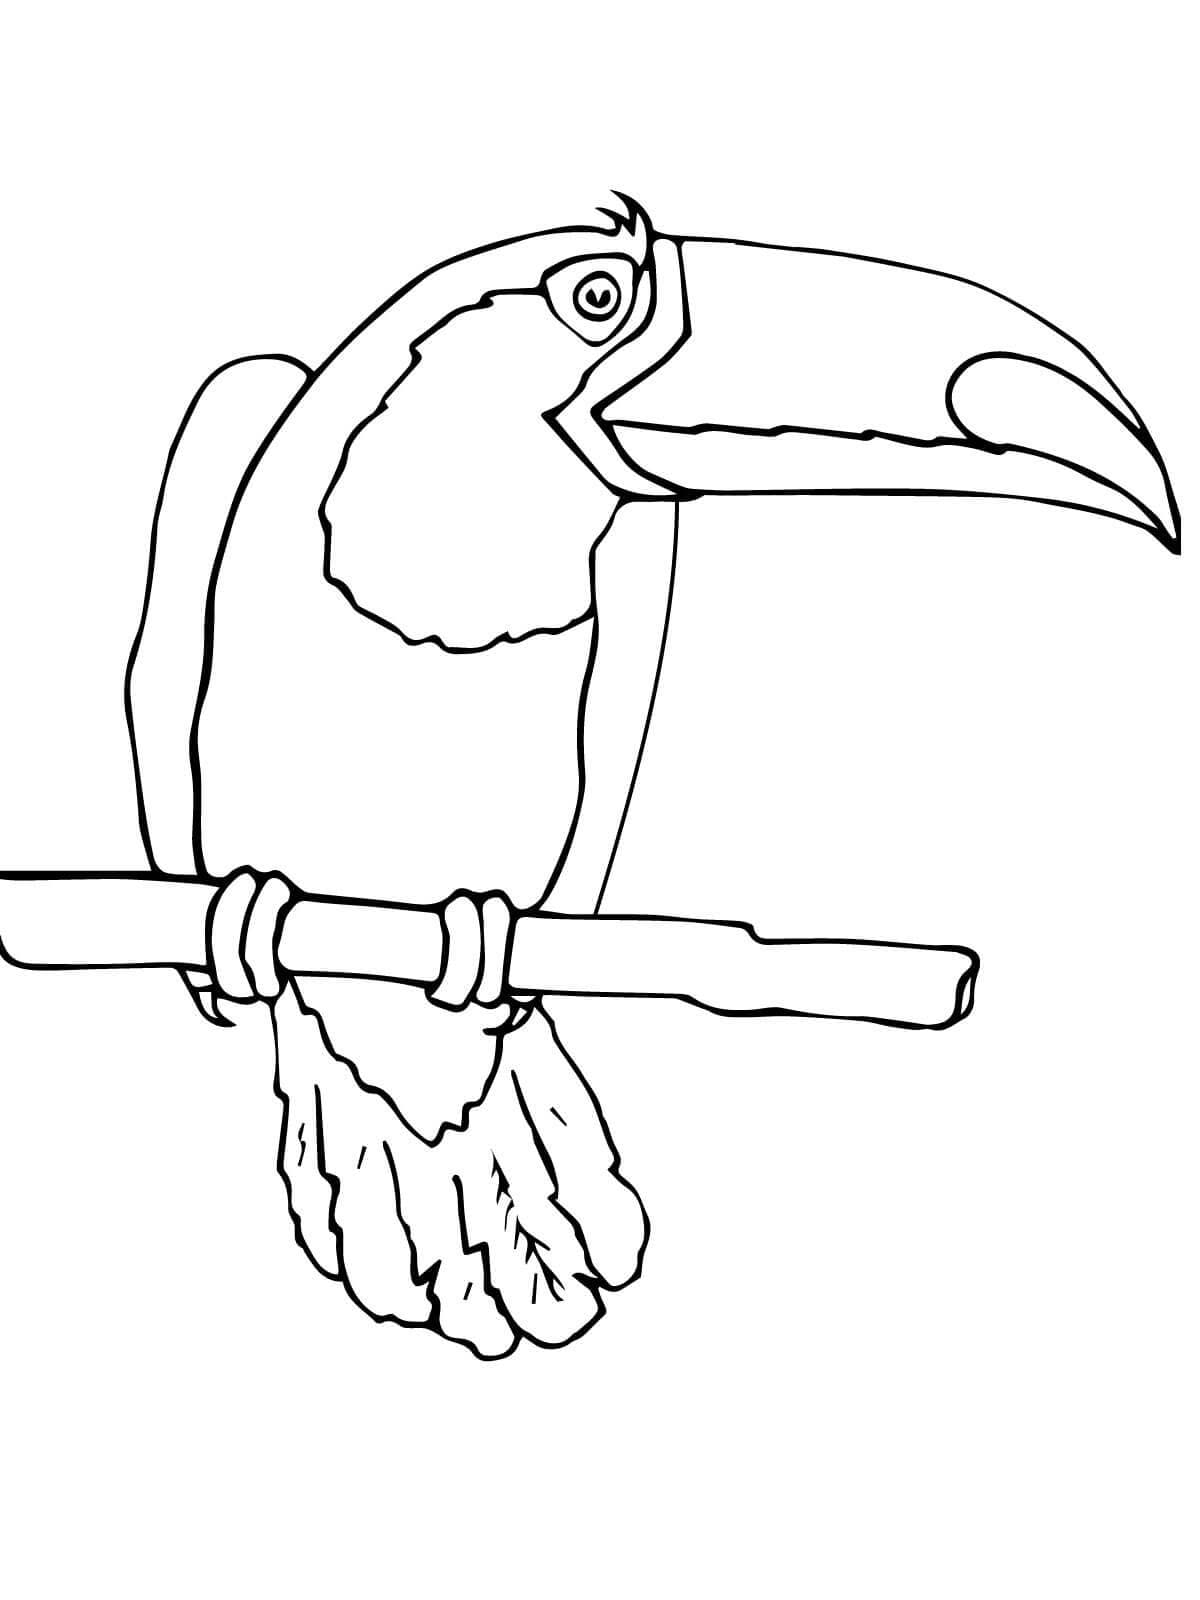 Imagem de pássaros tucanos para colorir